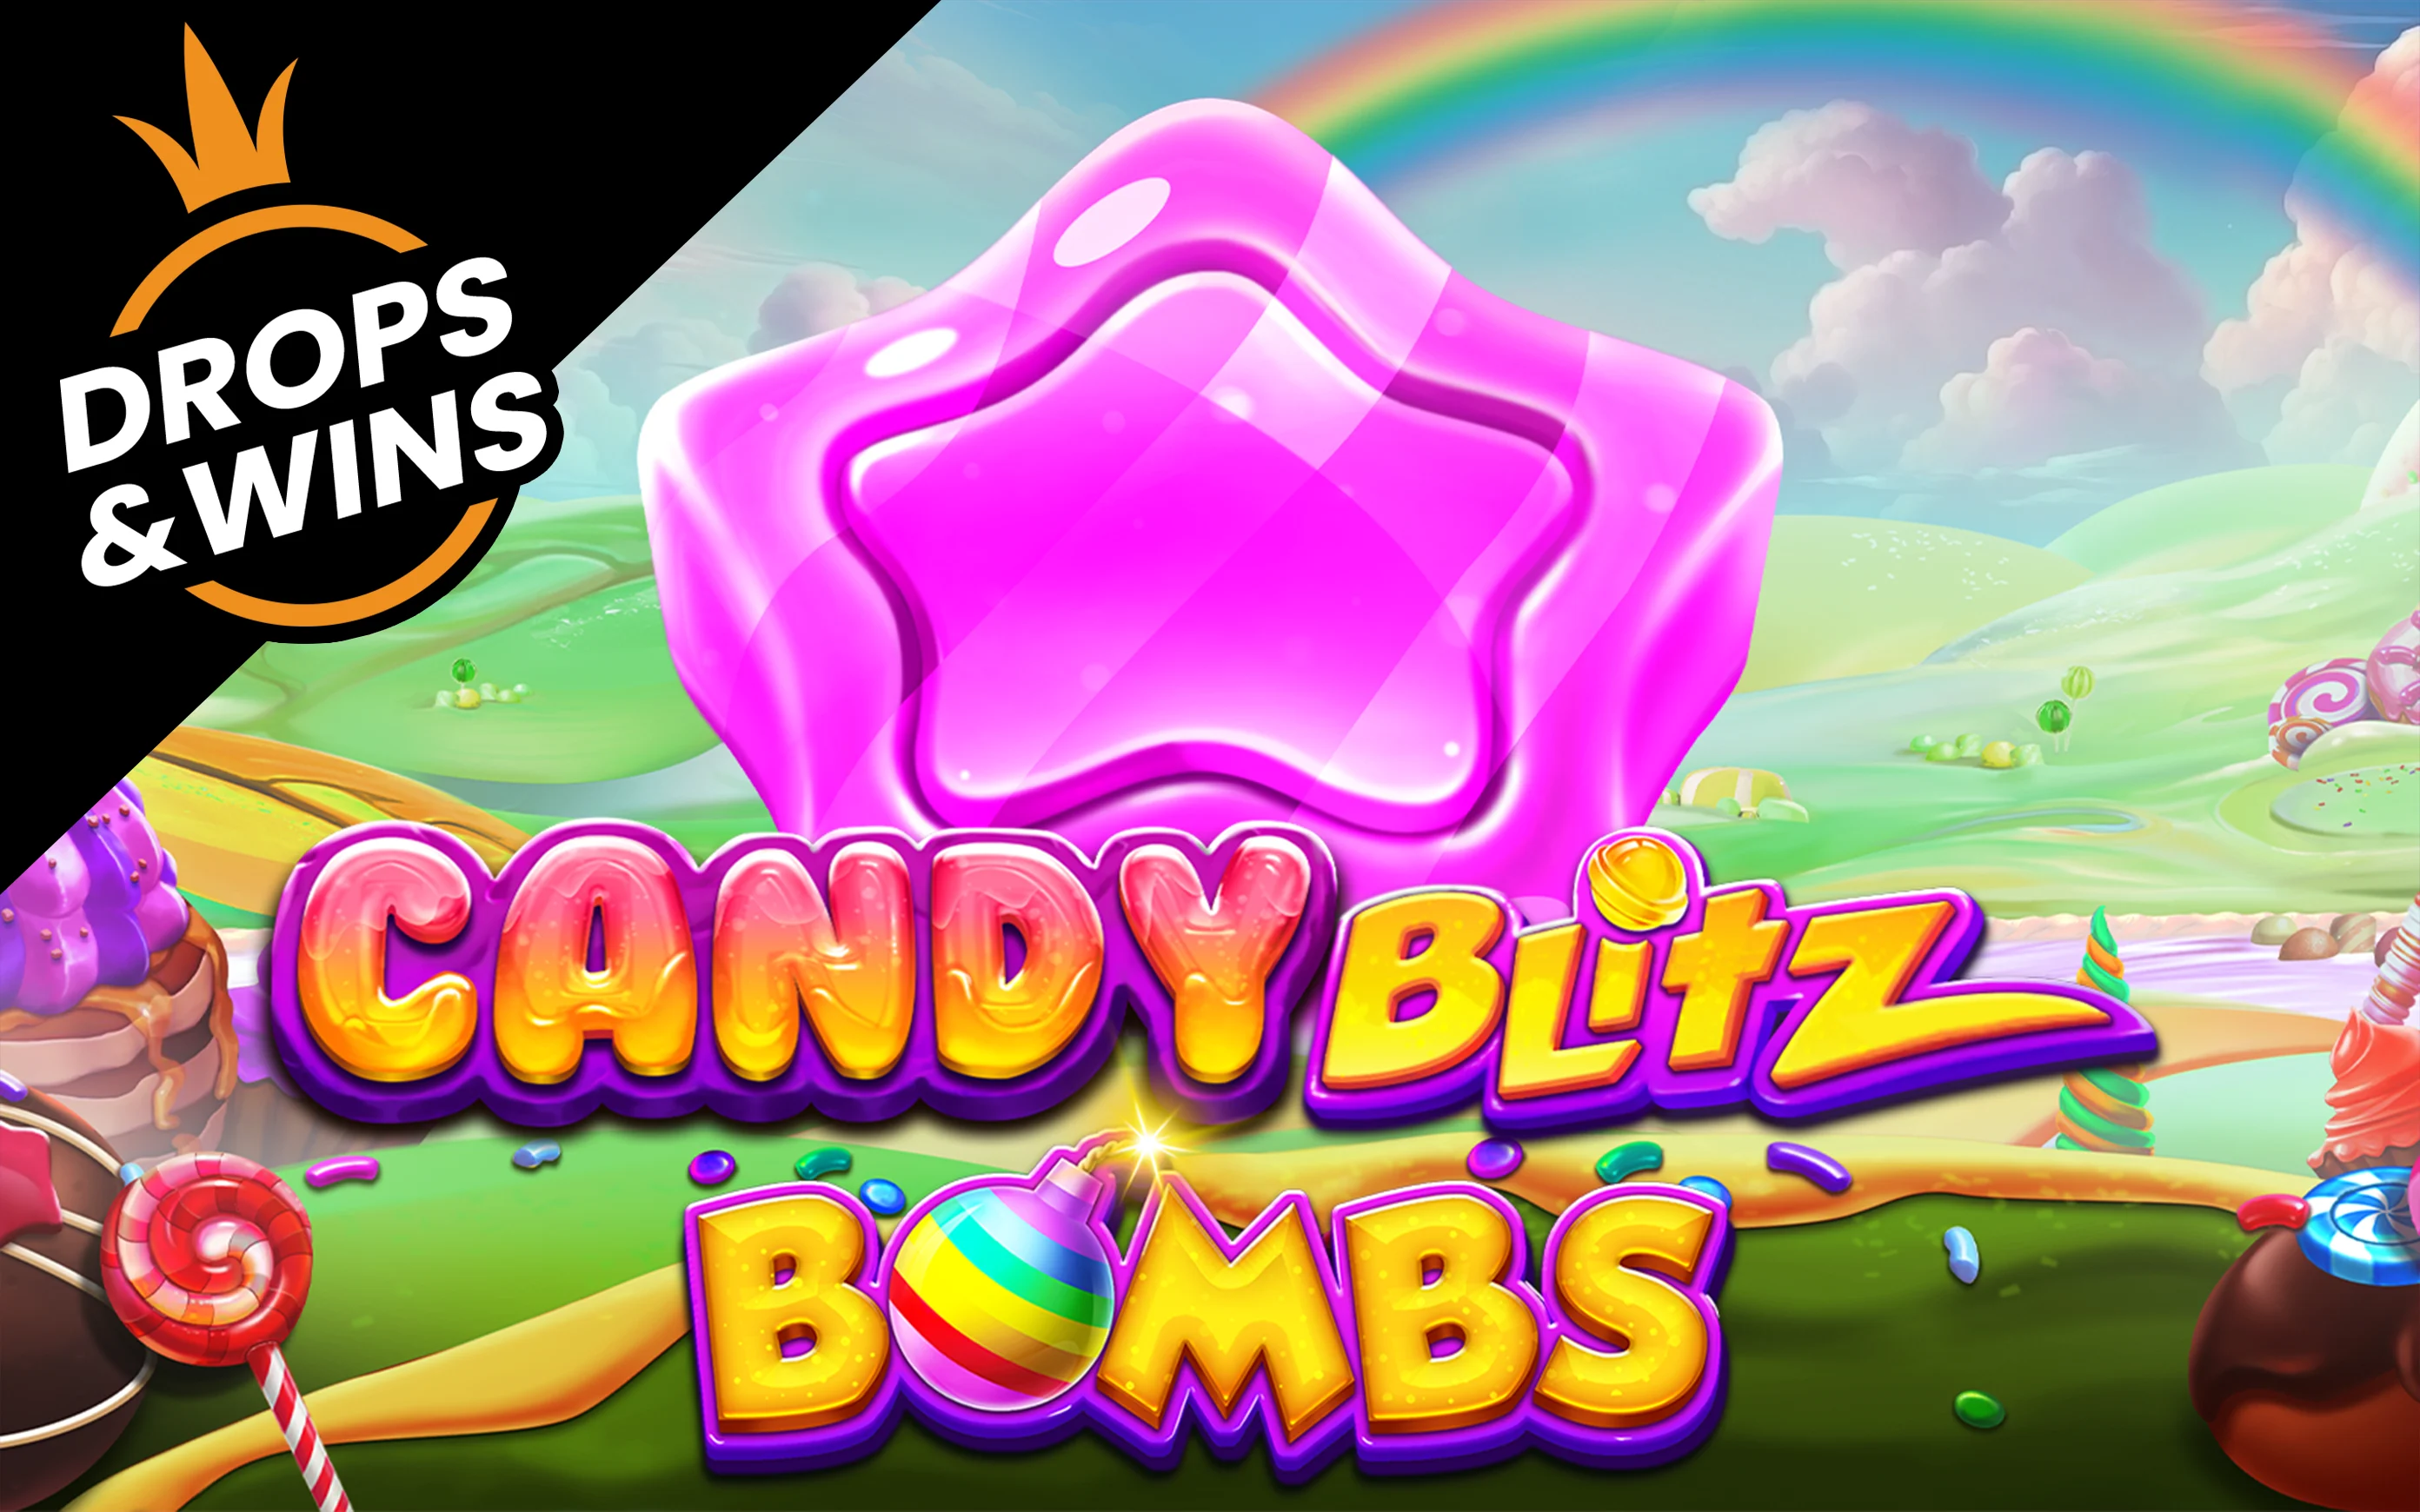 Zagraj w Candy Blitz Bombs w kasynie online Starcasino.be